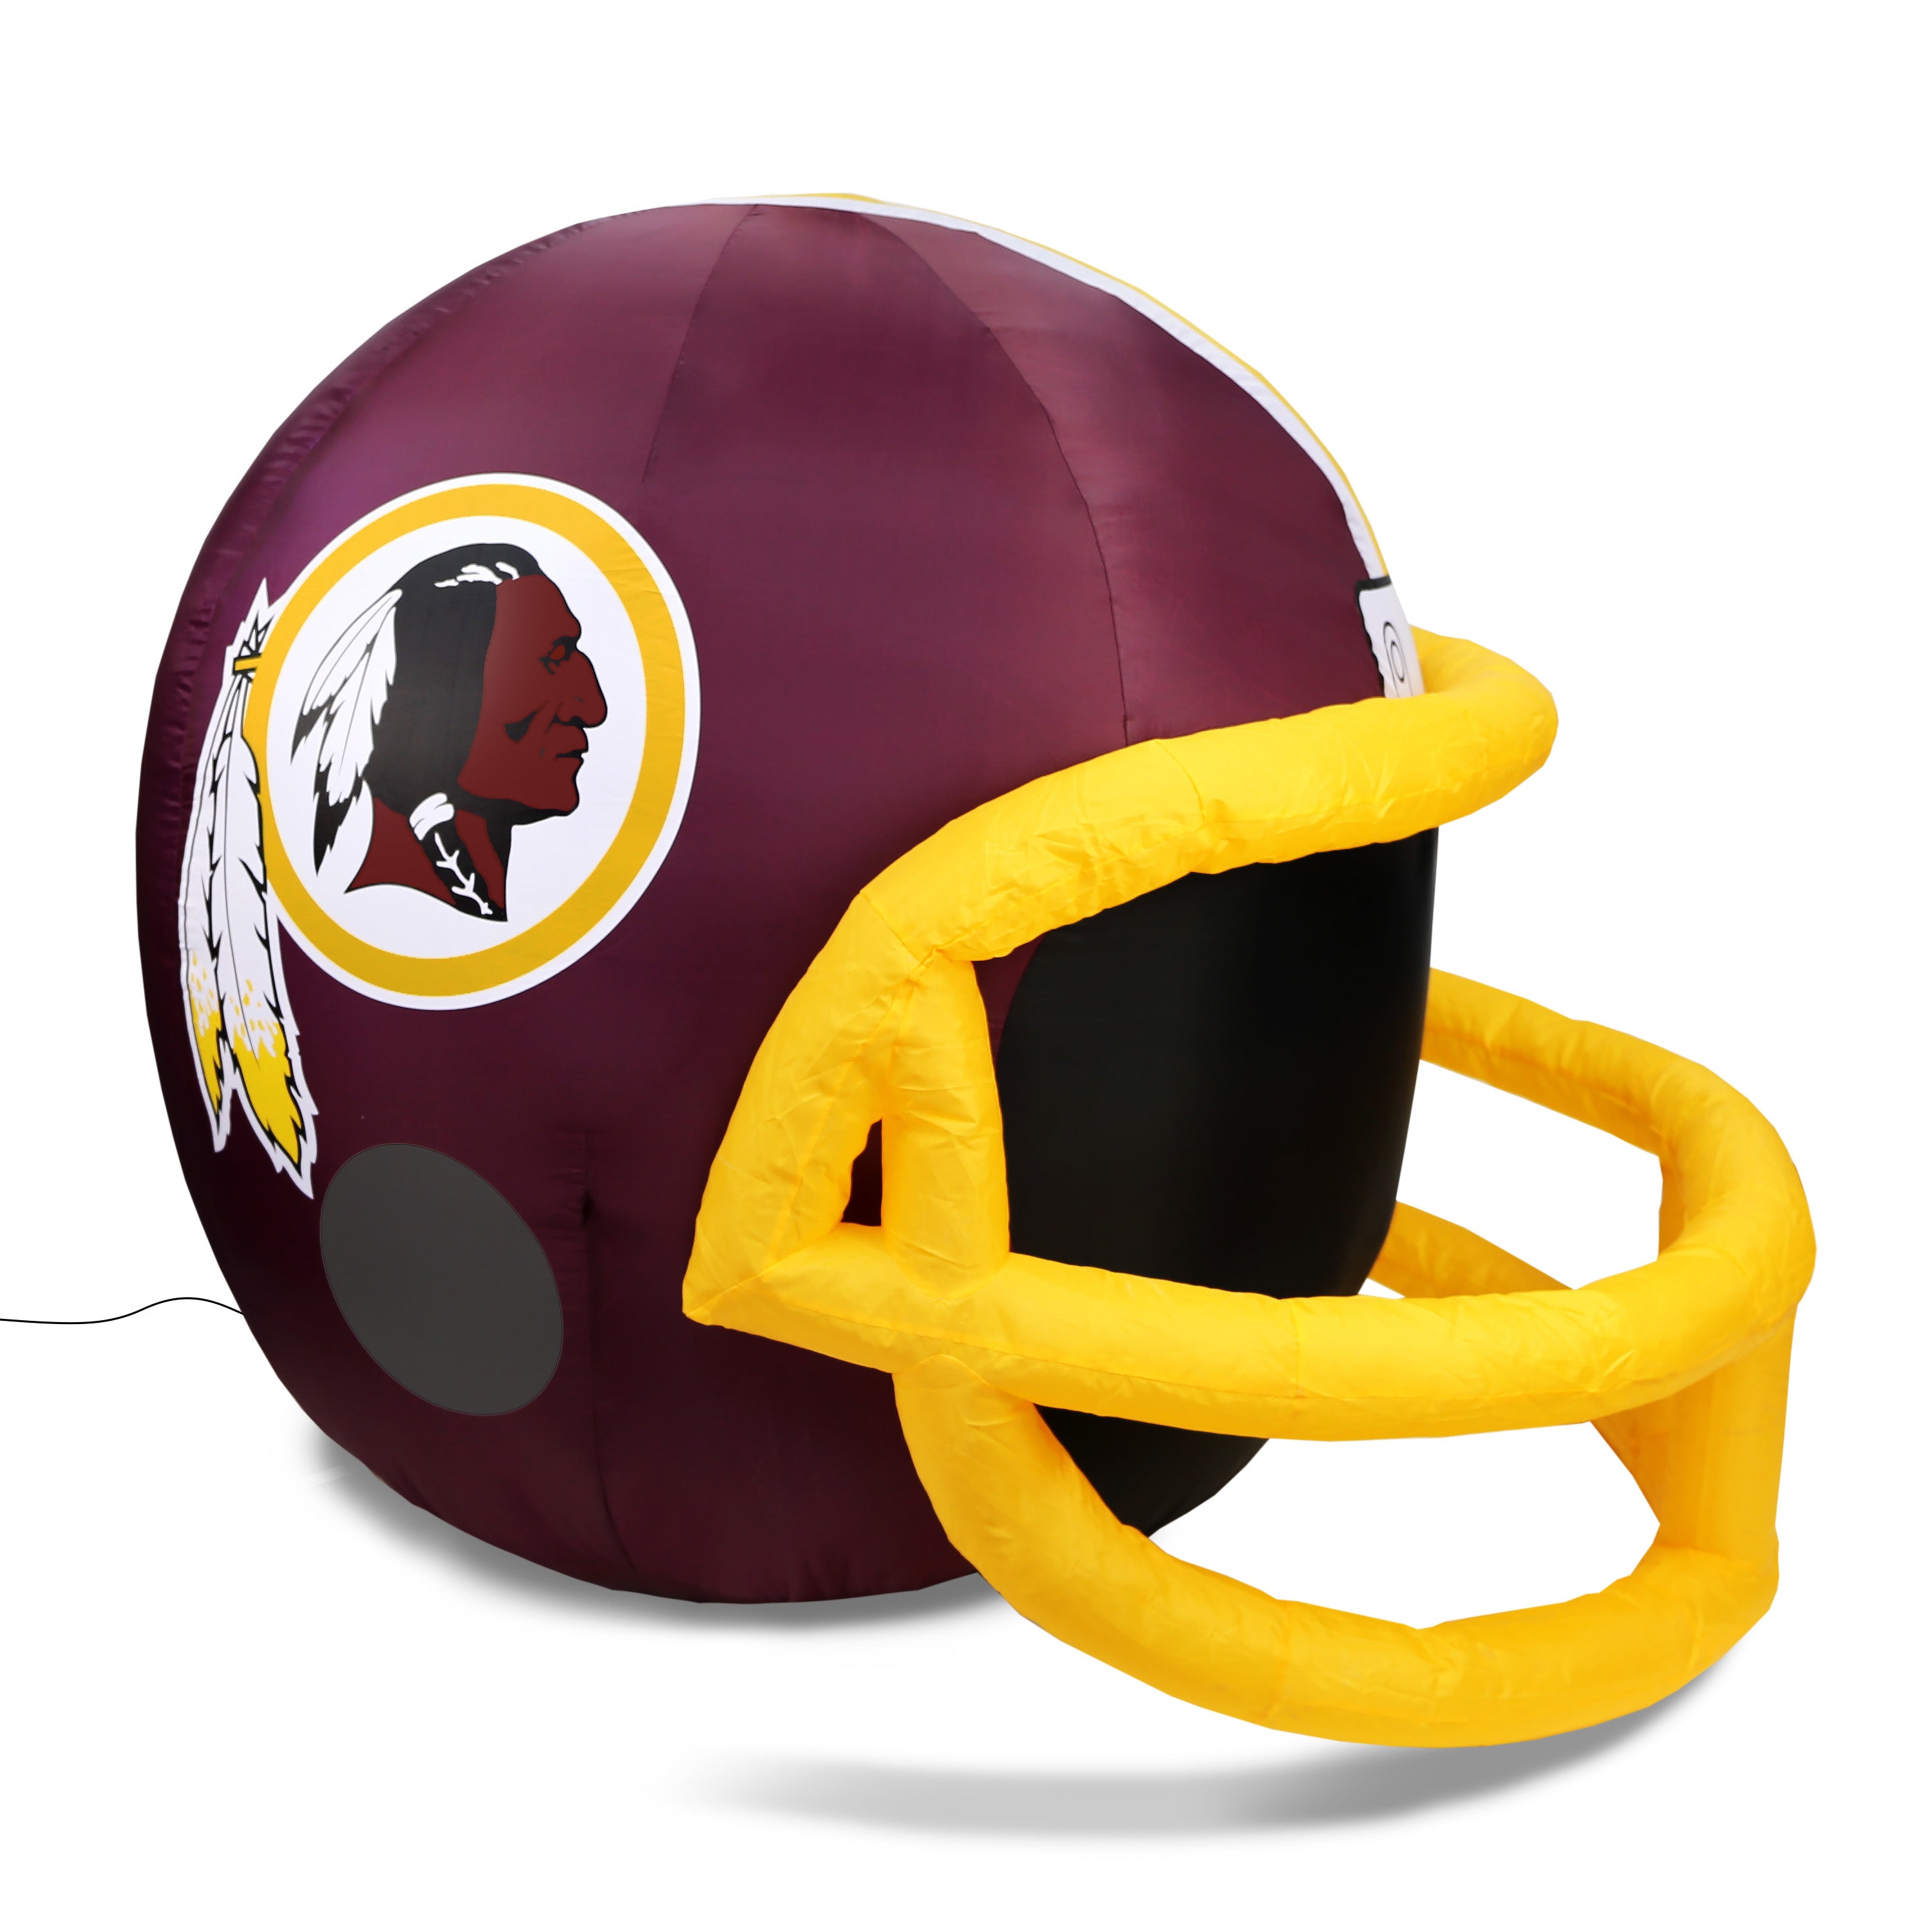 4' NFL Washington Redskins Team Inflatable Football Helmet